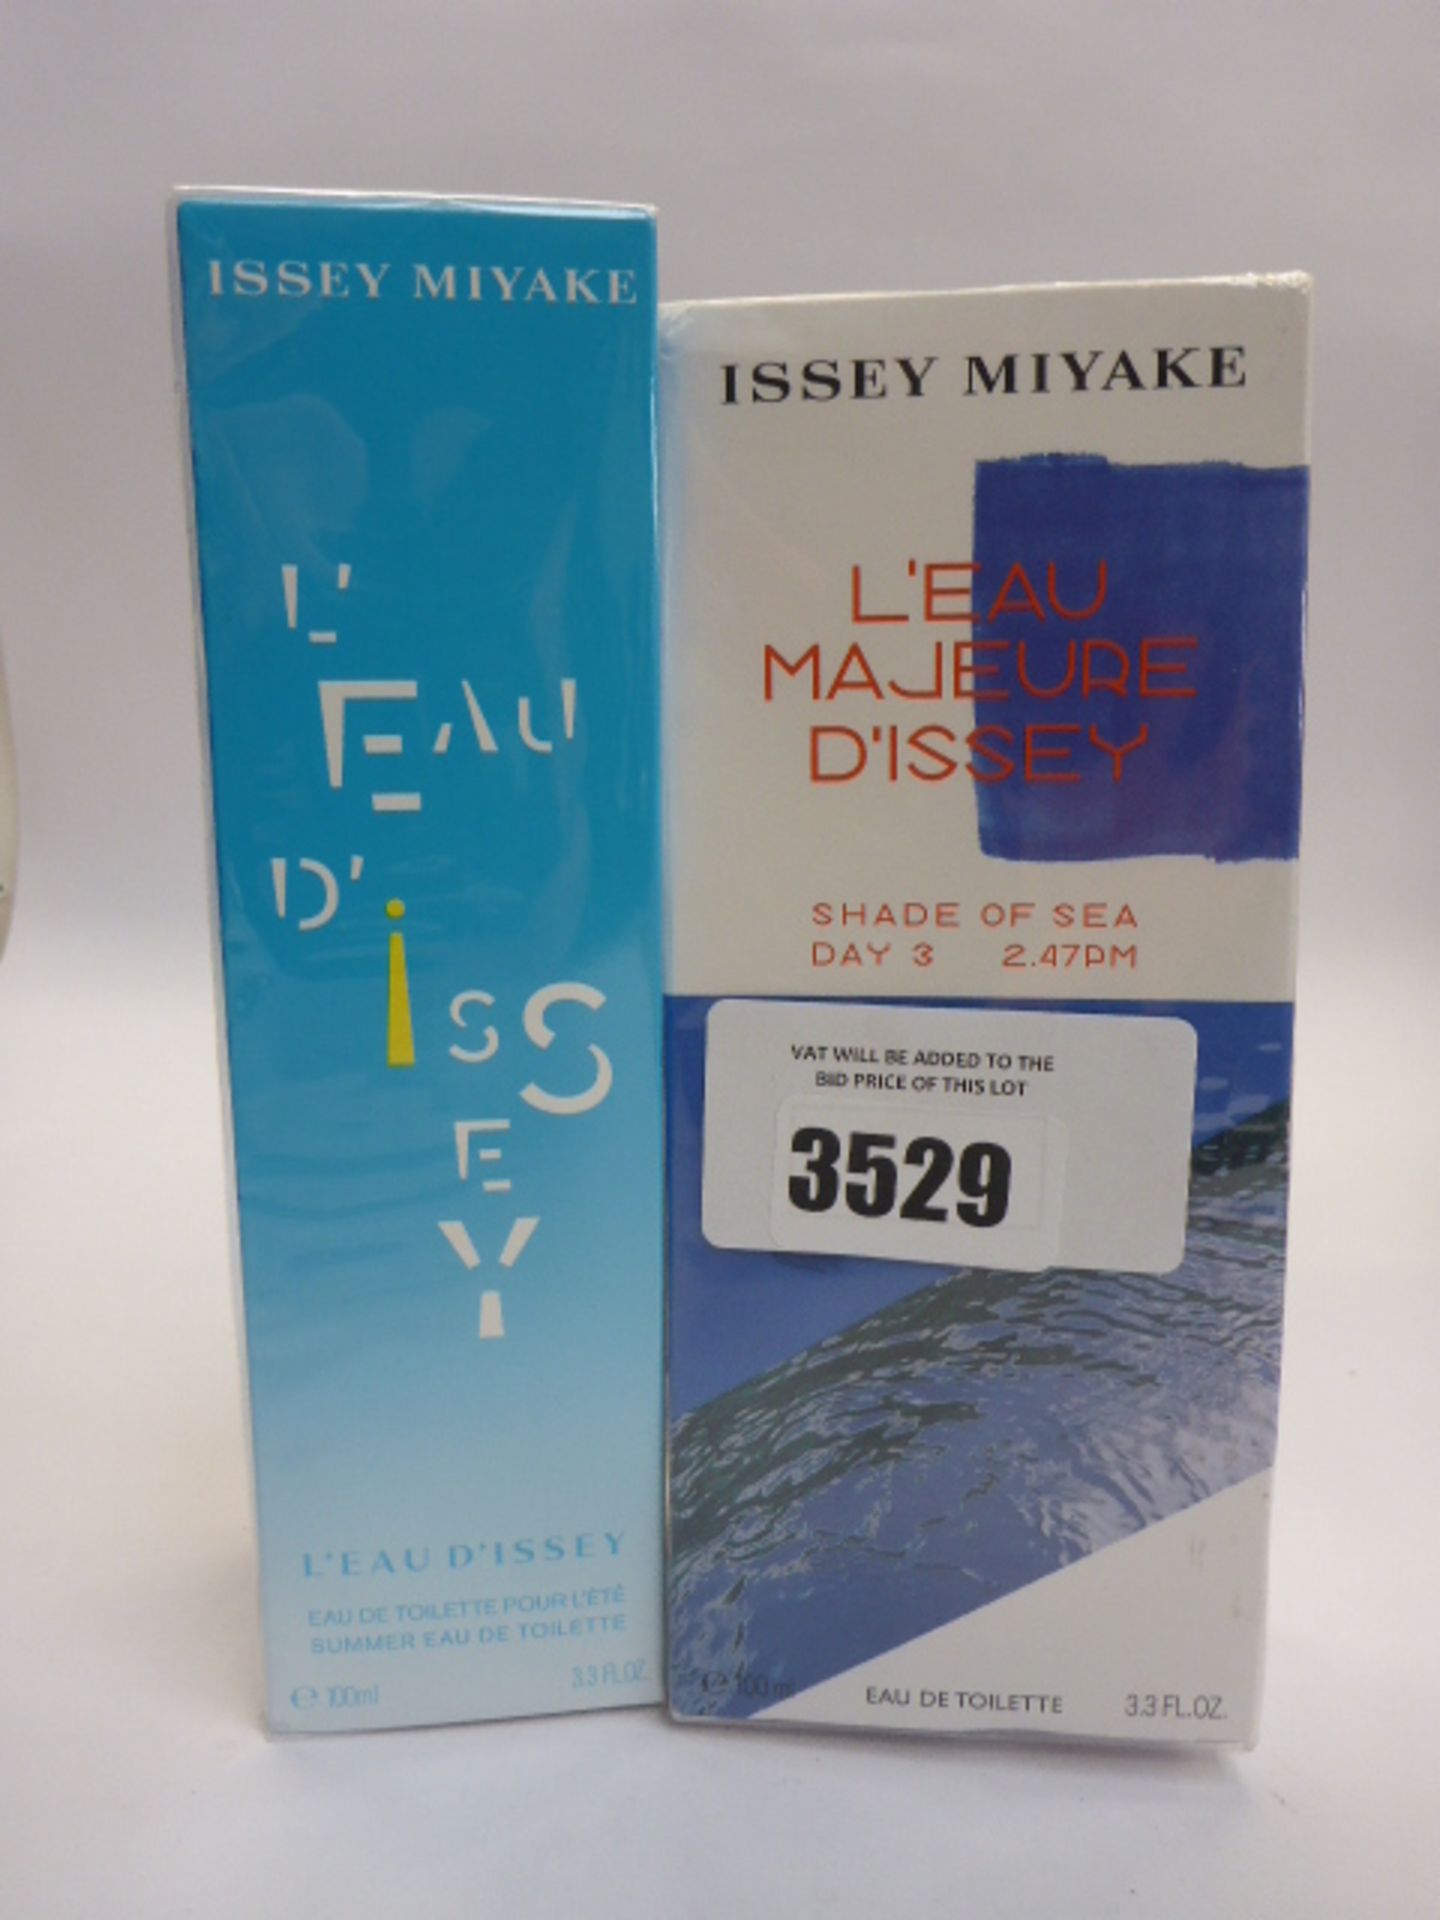 Issey Miyake L'Eau Dissey eau de toilette 100ml & L'eau Majeure D'Issey Shade of Sea eau de toilette